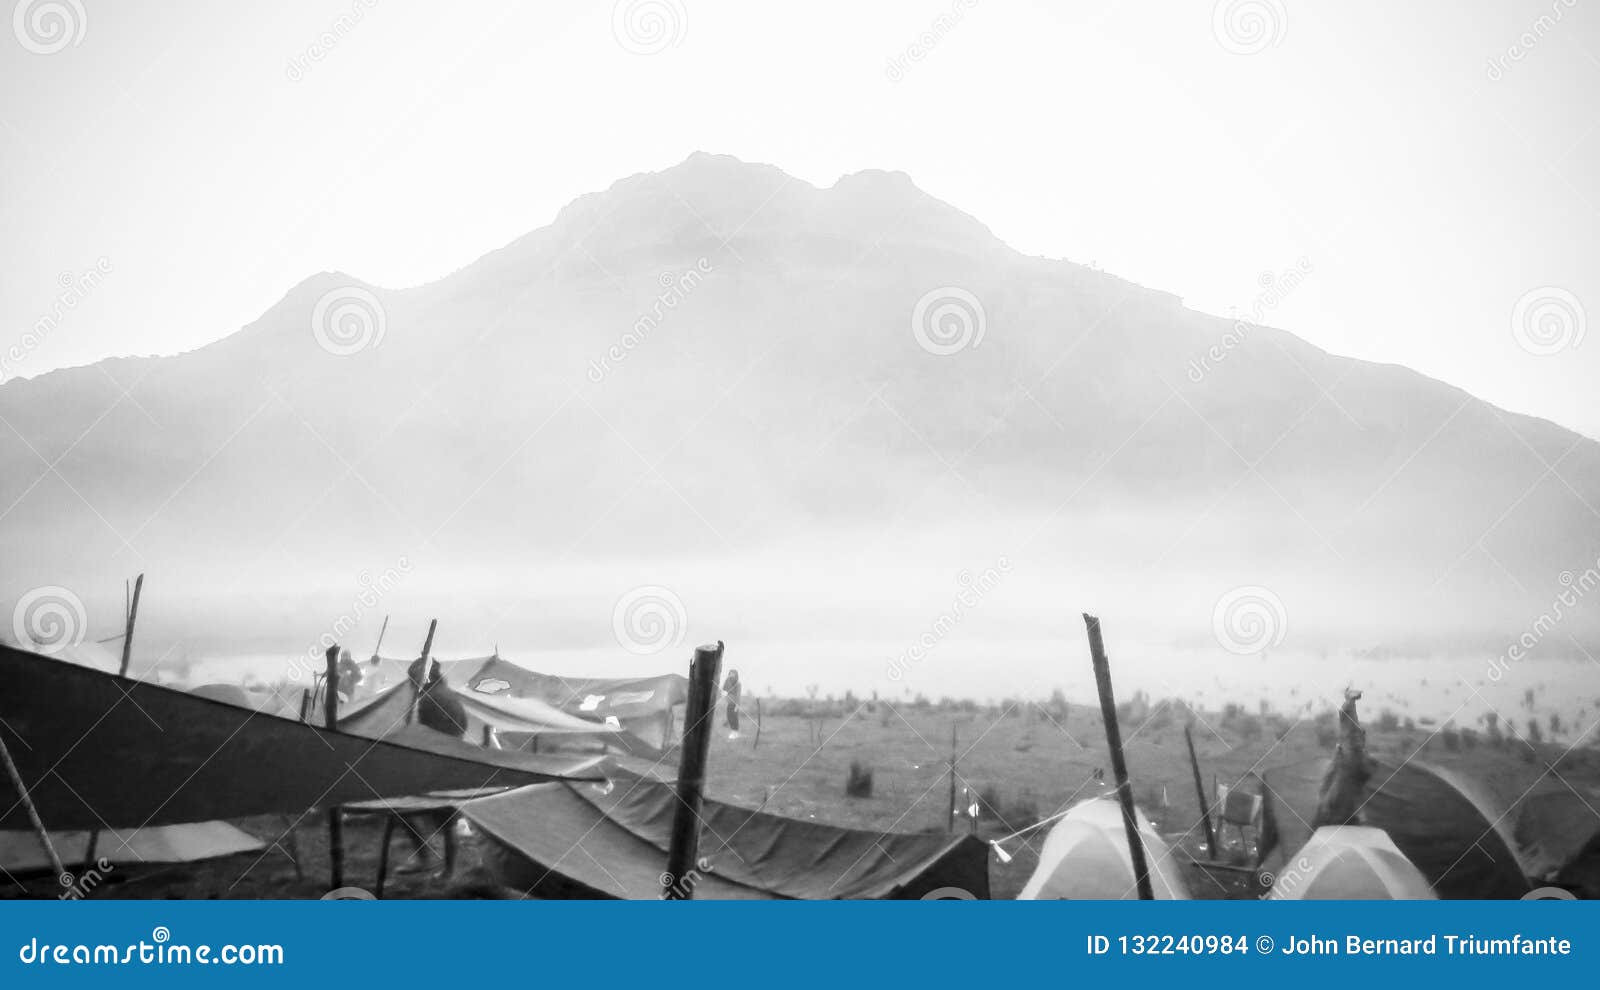 mount apo, philippines highest mountain, lake venado campsite